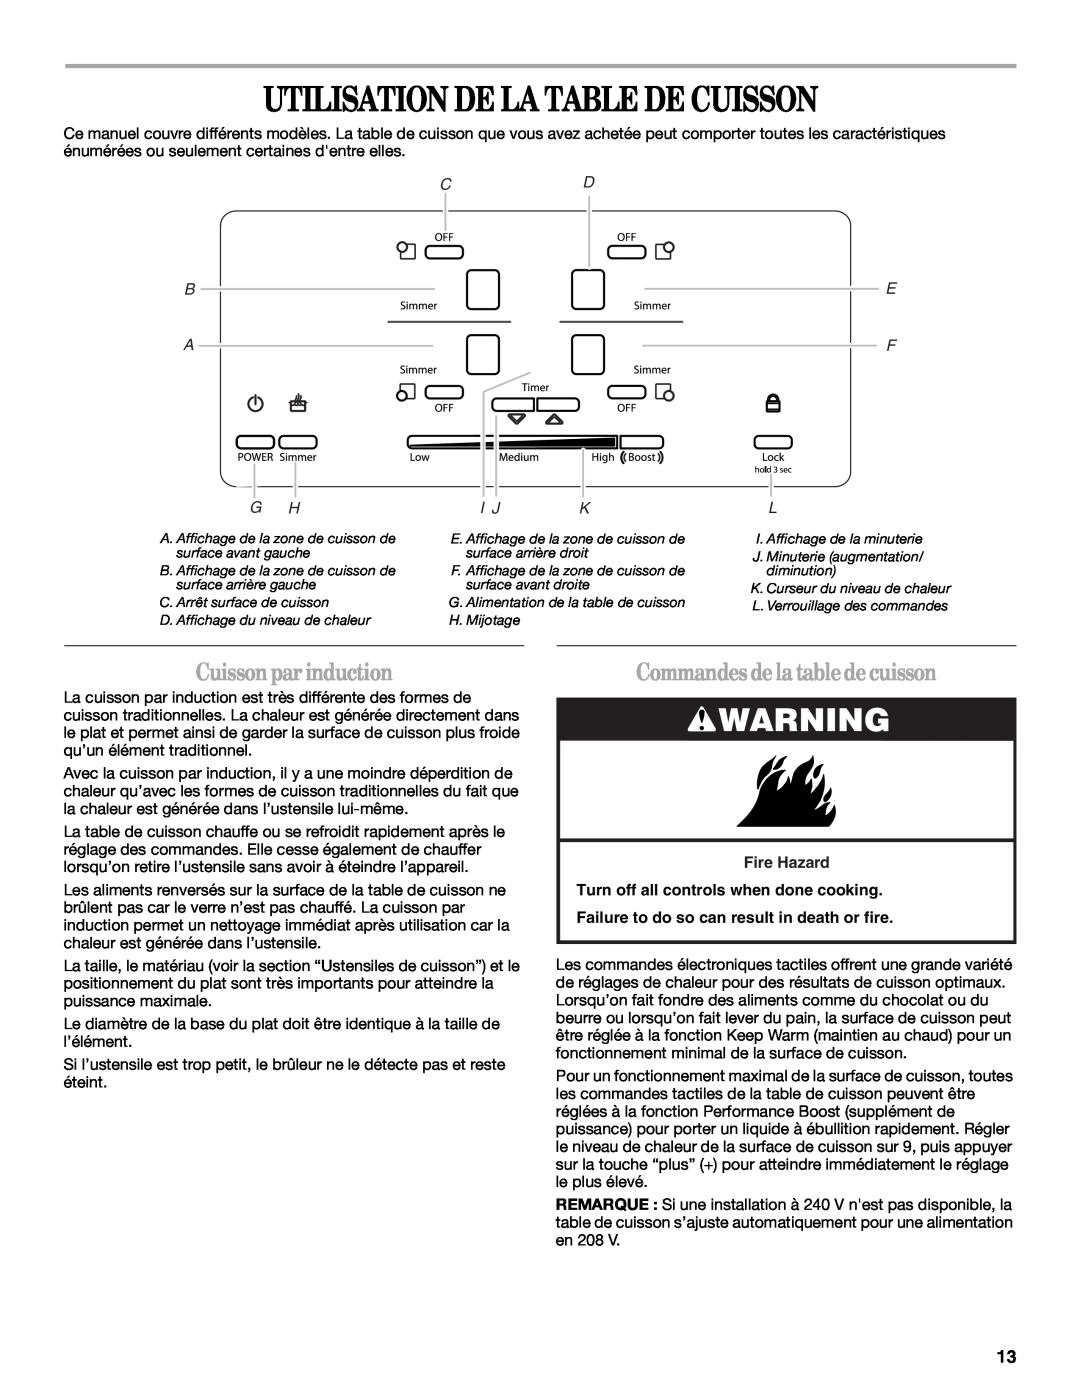 Whirlpool GCI3061XB manual Utilisation De La Table De Cuisson, Cuissonpar induction, Commandes de la tablede cuisson, E F L 